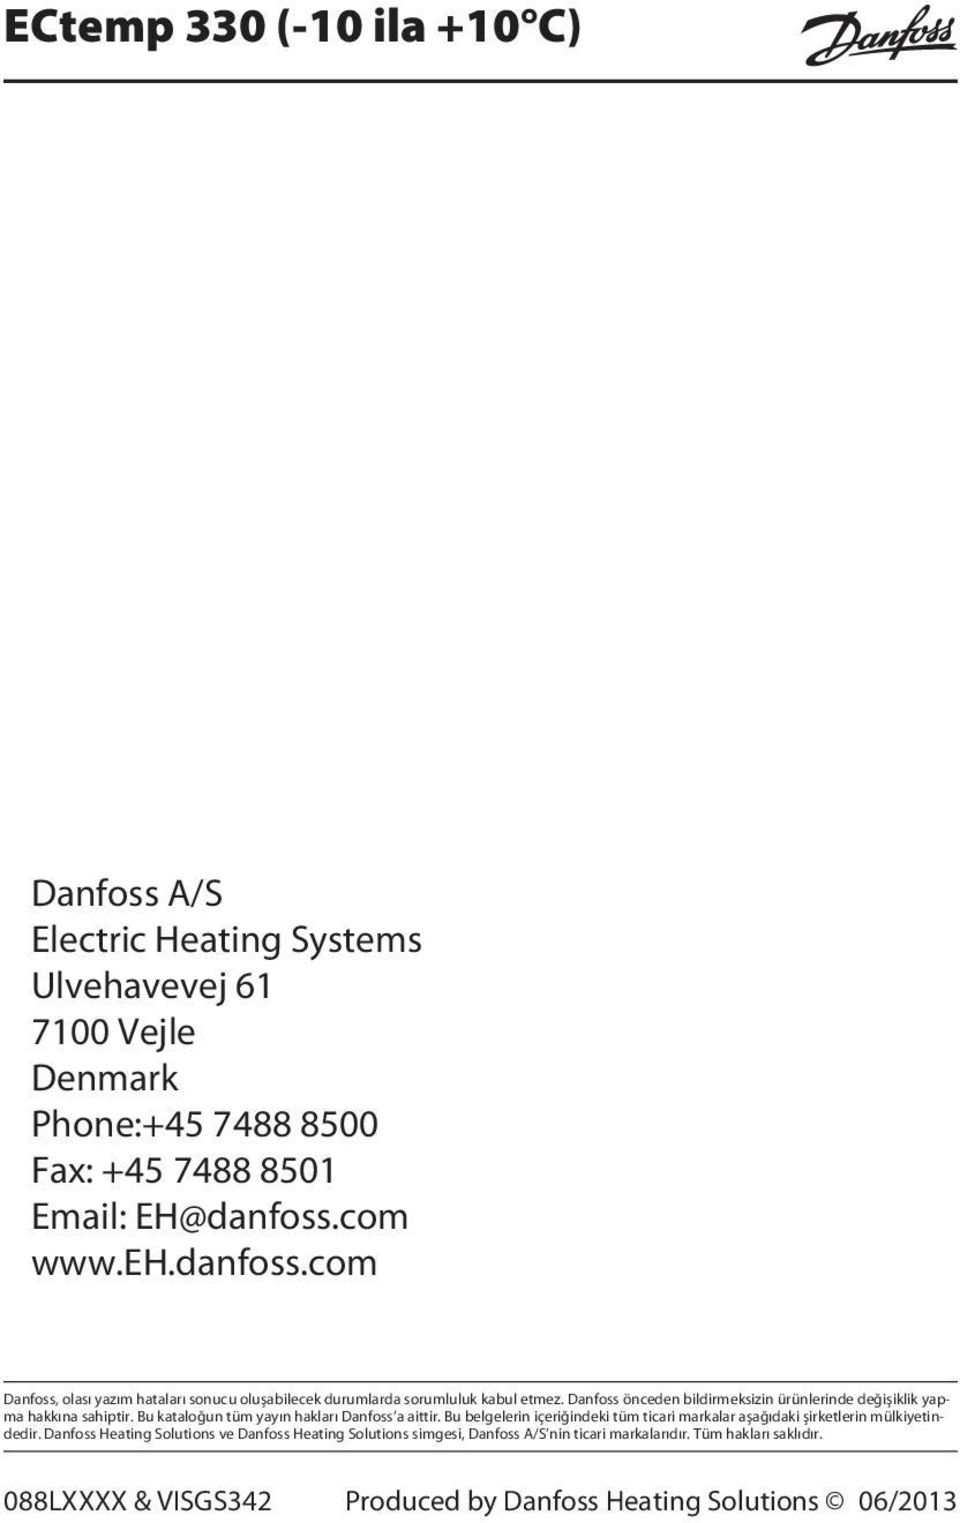 Danfoss önceden bildirmeksizin ürünlerinde değişiklik yapma hakkına sahiptir. Bu kataloğun tüm yayın hakları Danfoss a aittir.